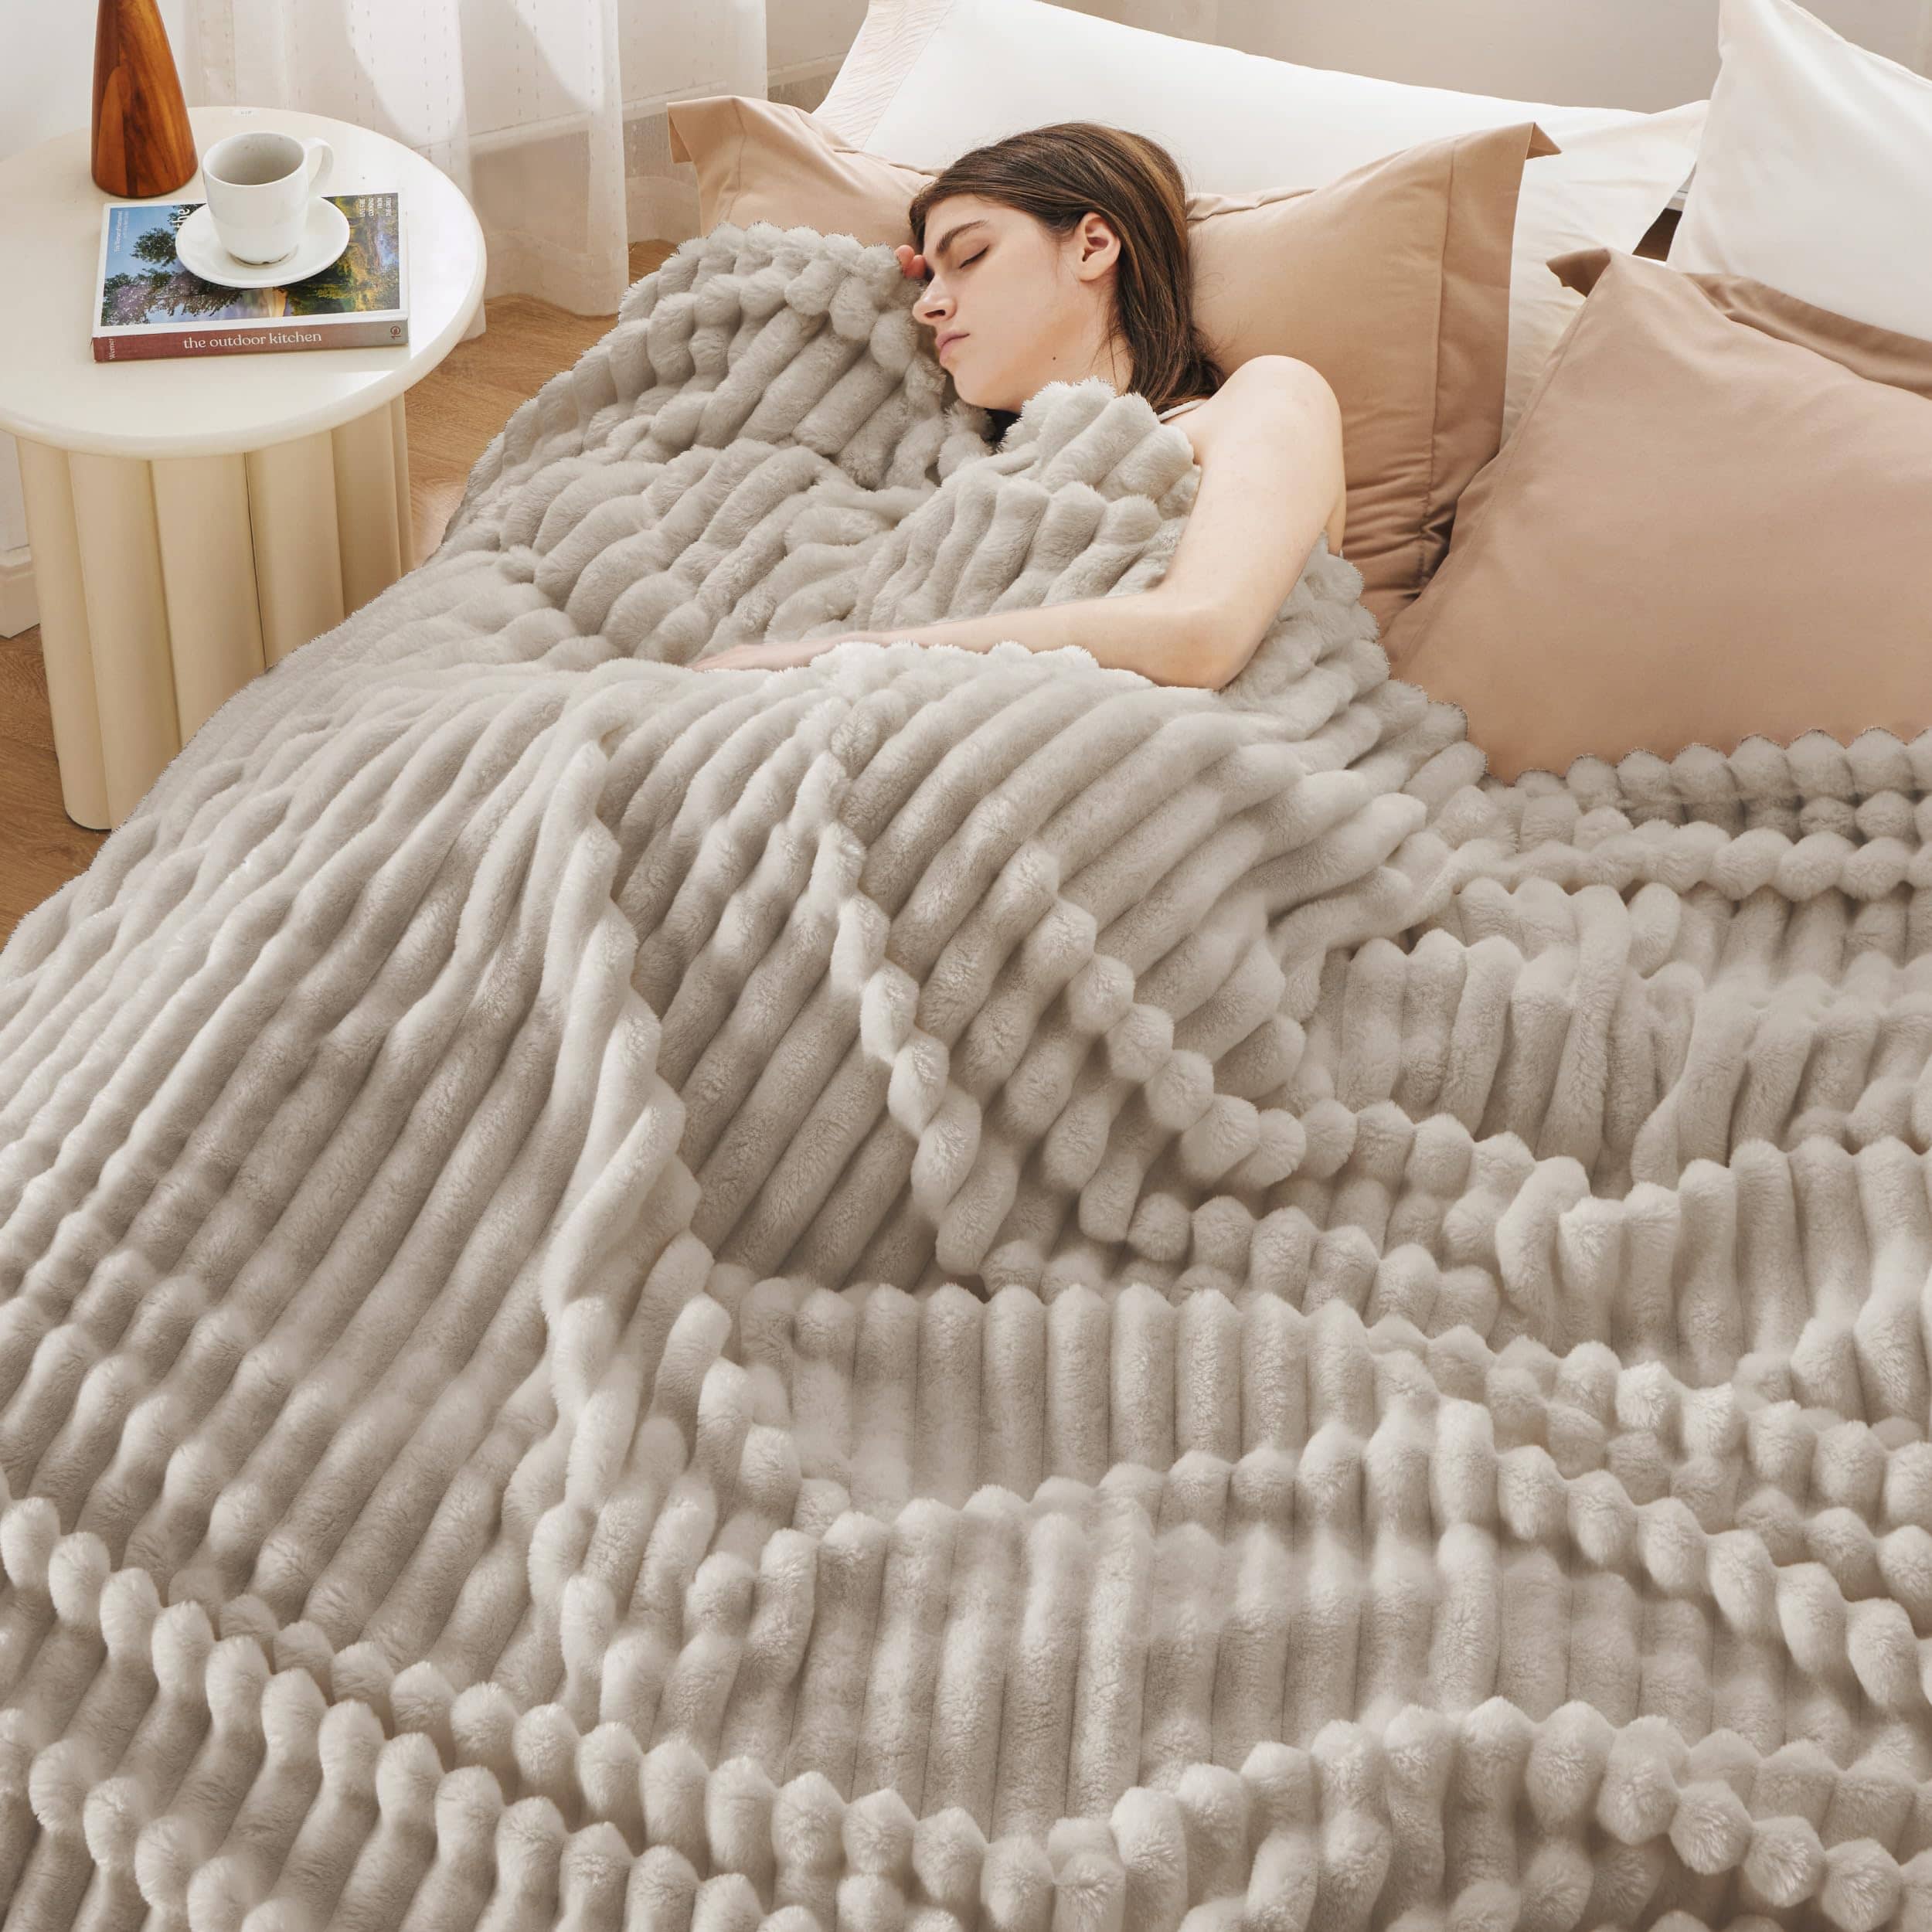 Bedsure Super Soft Flannel Fleece Throw Blanket